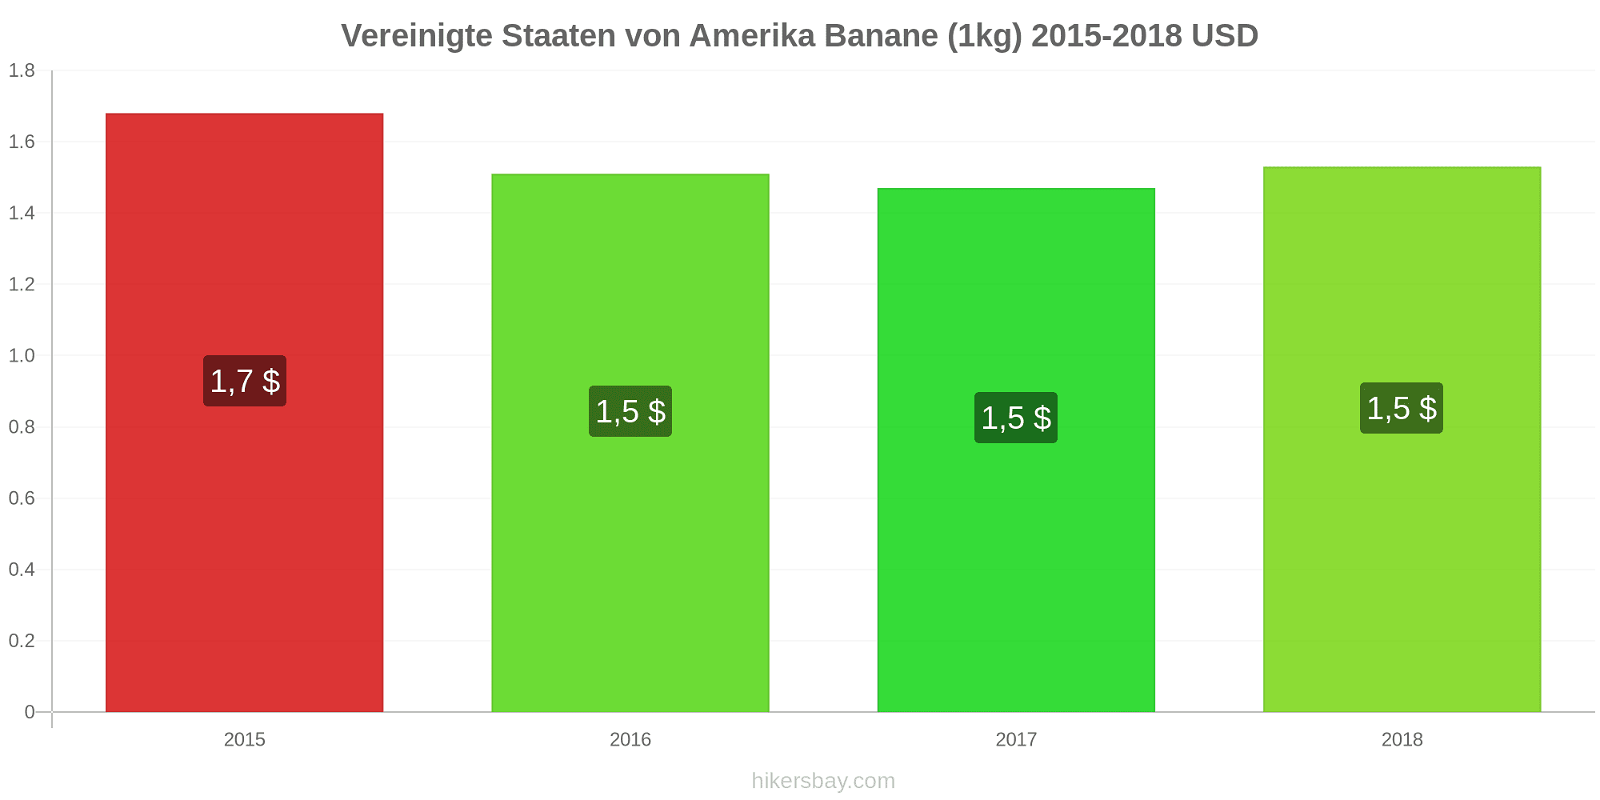 Vereinigte Staaten von Amerika Preisänderungen Bananen (1kg) hikersbay.com